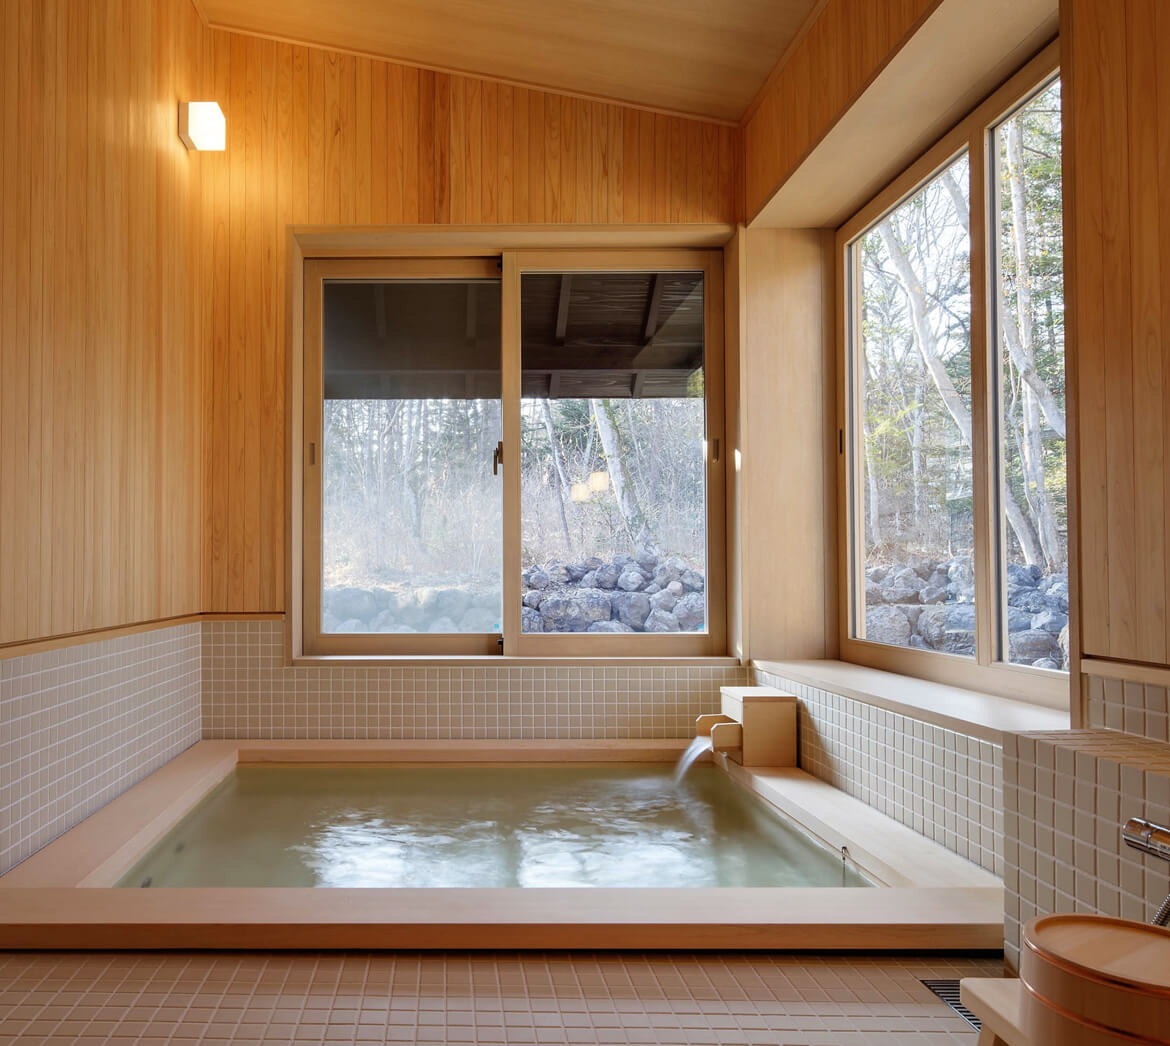 輕井澤Shishi-Iwa House結合了日式和現代設計元素，其特色之一便是擁有充滿HINOKI日本扁柏芬芳的空間。不僅建築中使用了日本扁柏，洗浴設施中也加入了HINOKI日本扁柏製成的浴池，讓客人沉浸在溫暖的木香中，享受身心放鬆